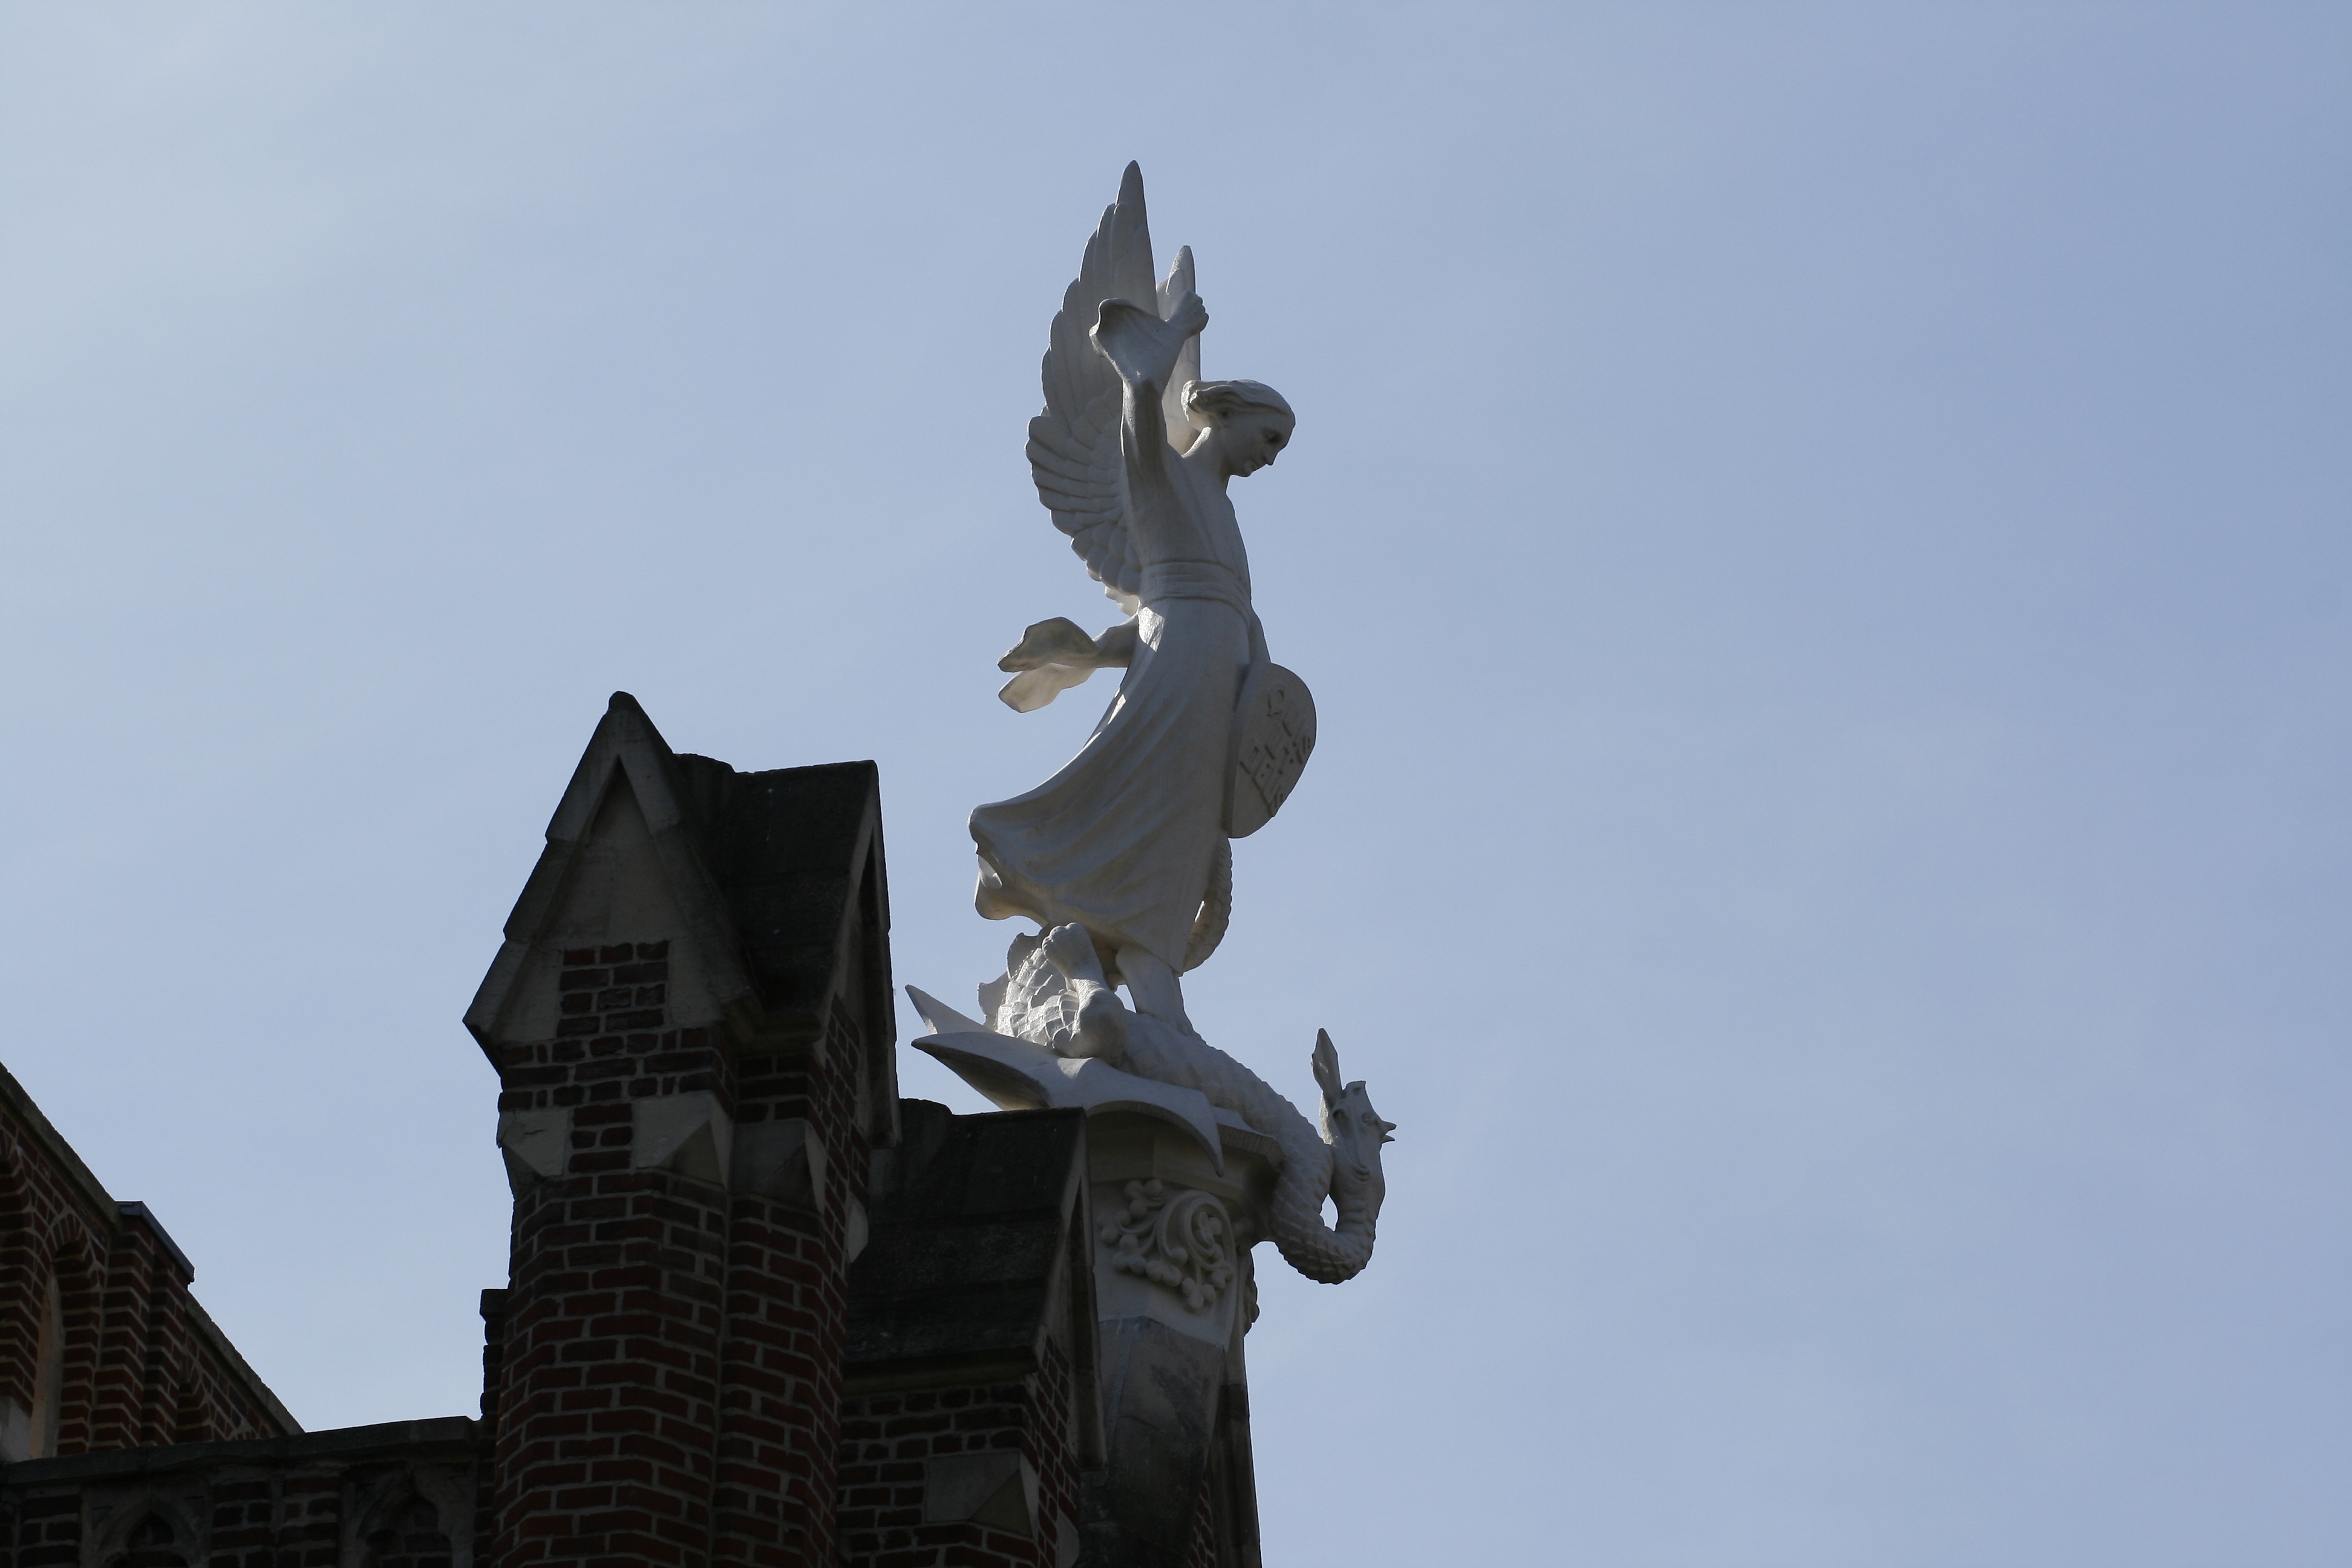 L'archange Saint-Michel terrassant le dragon, surplombe l'Hôtel Académique